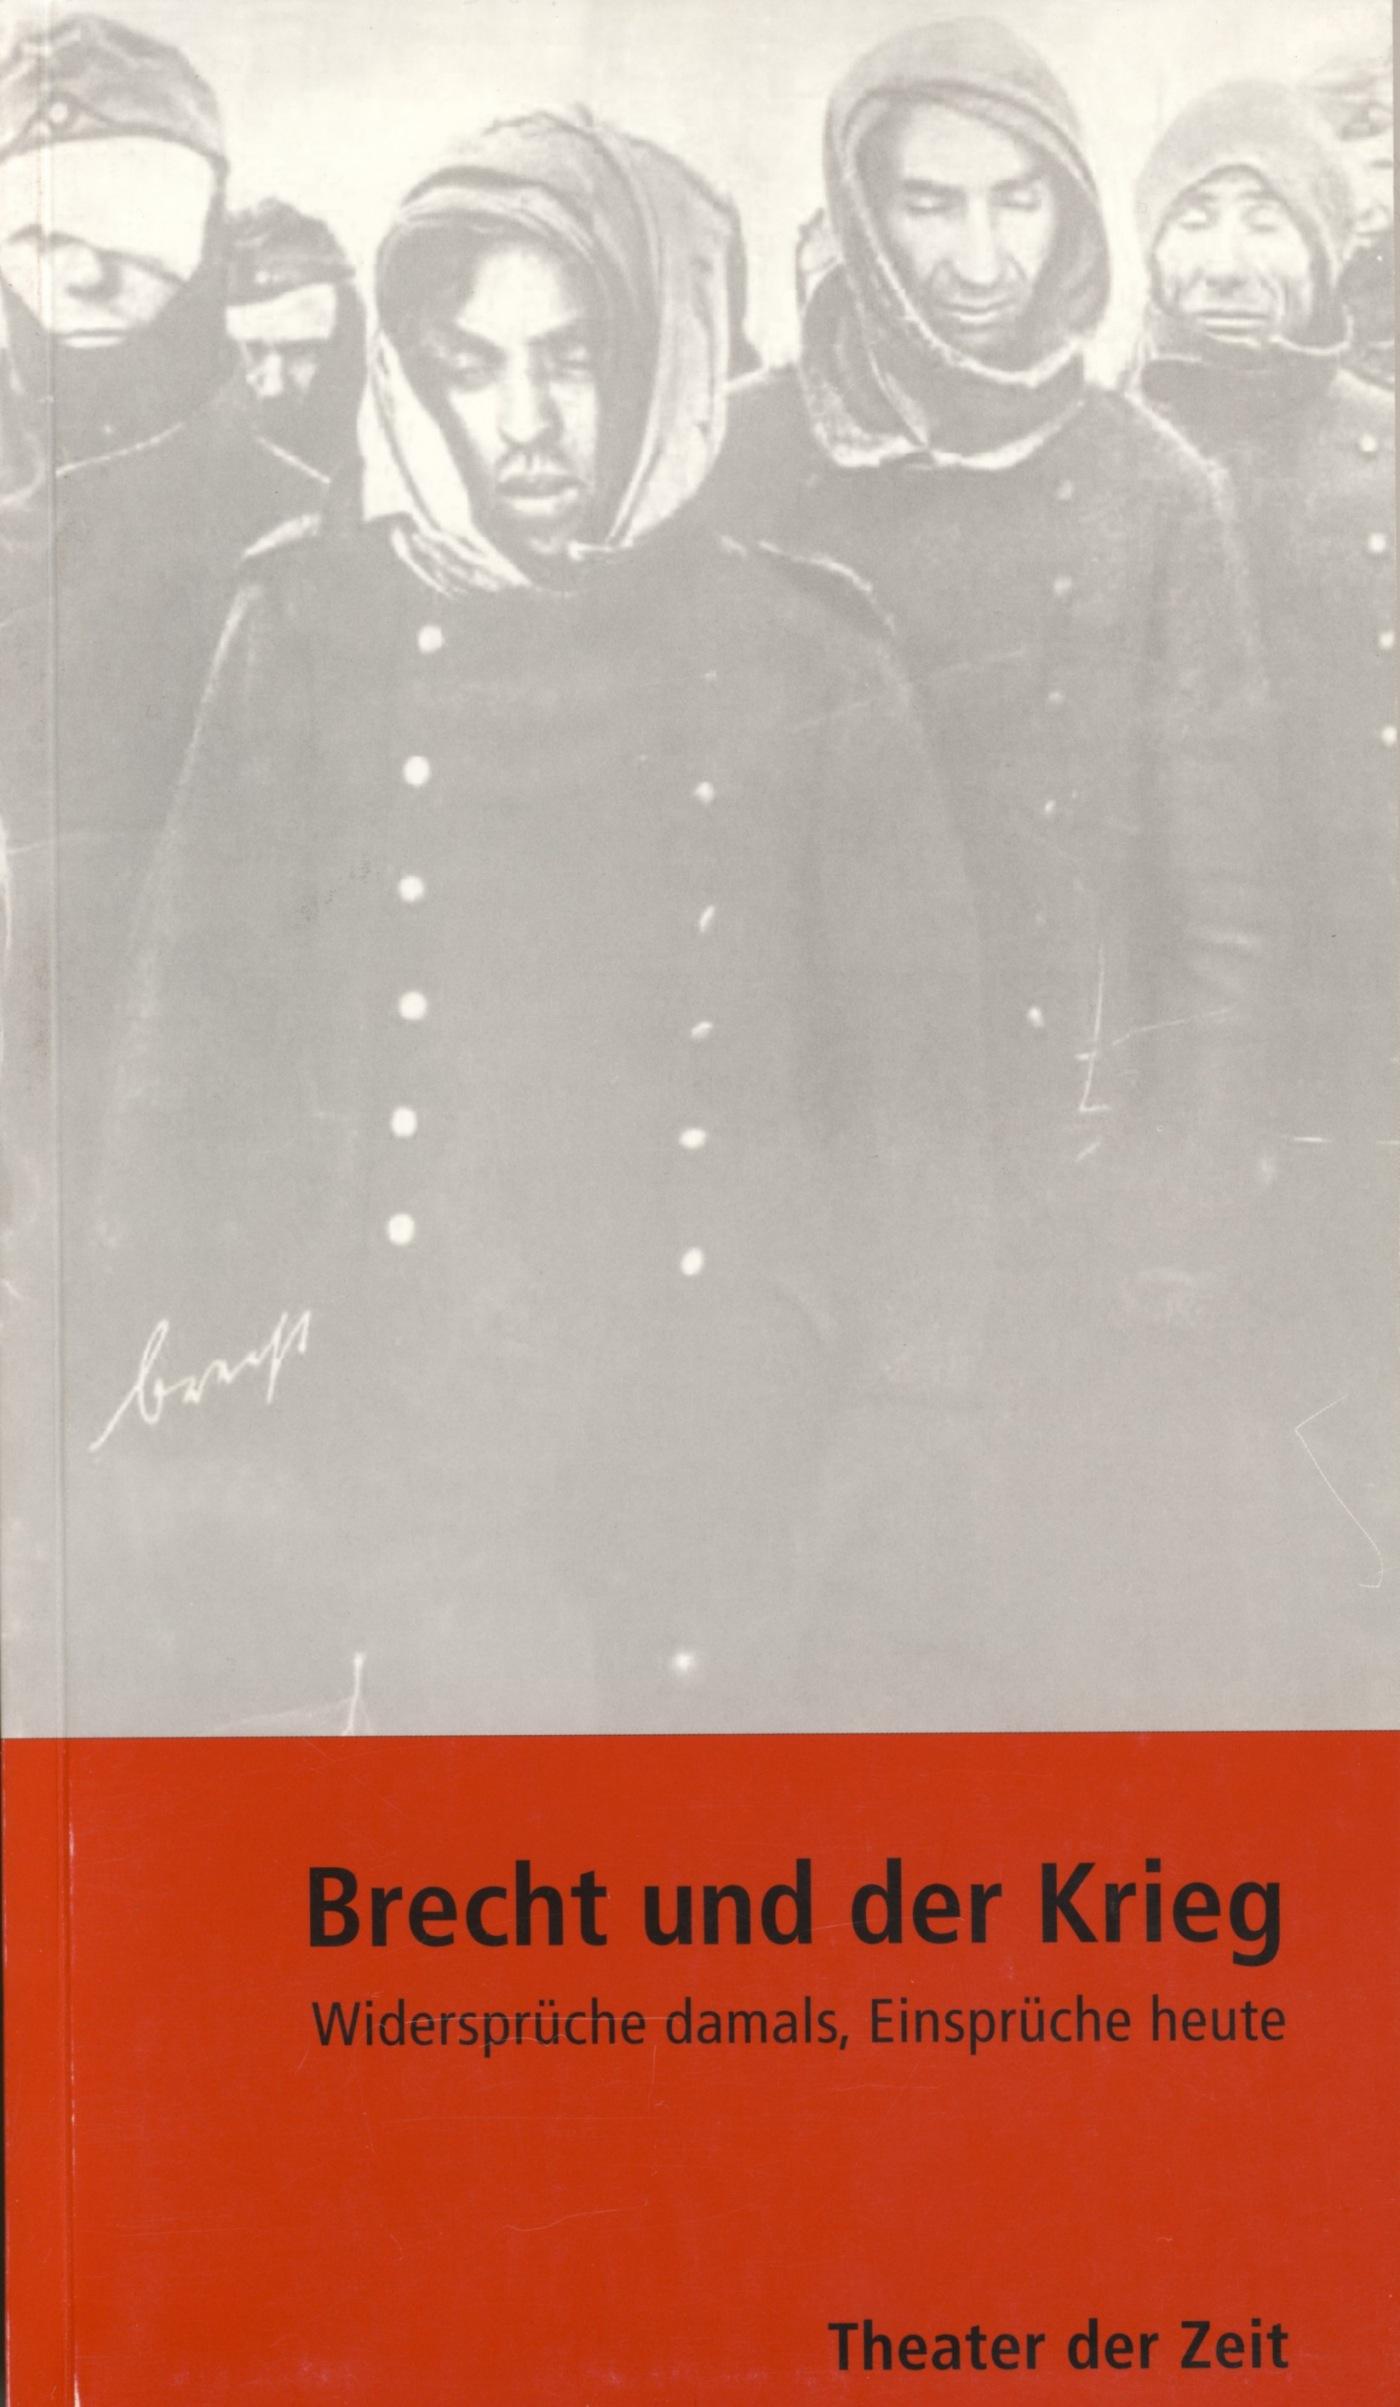 Recherchen 23 "Brecht und der Krieg"